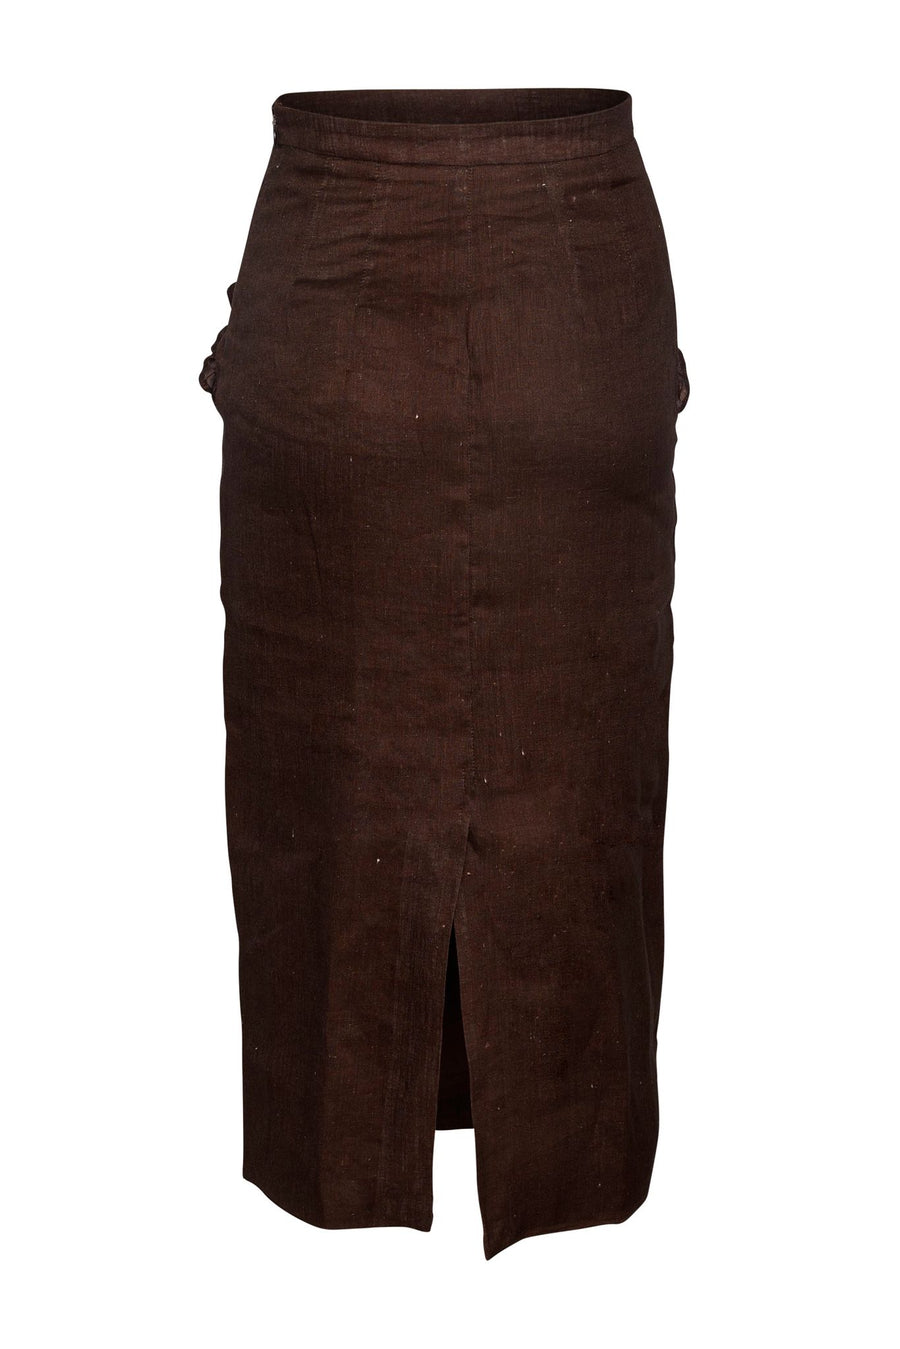 Mila Skirt  Dusty Brown Linen